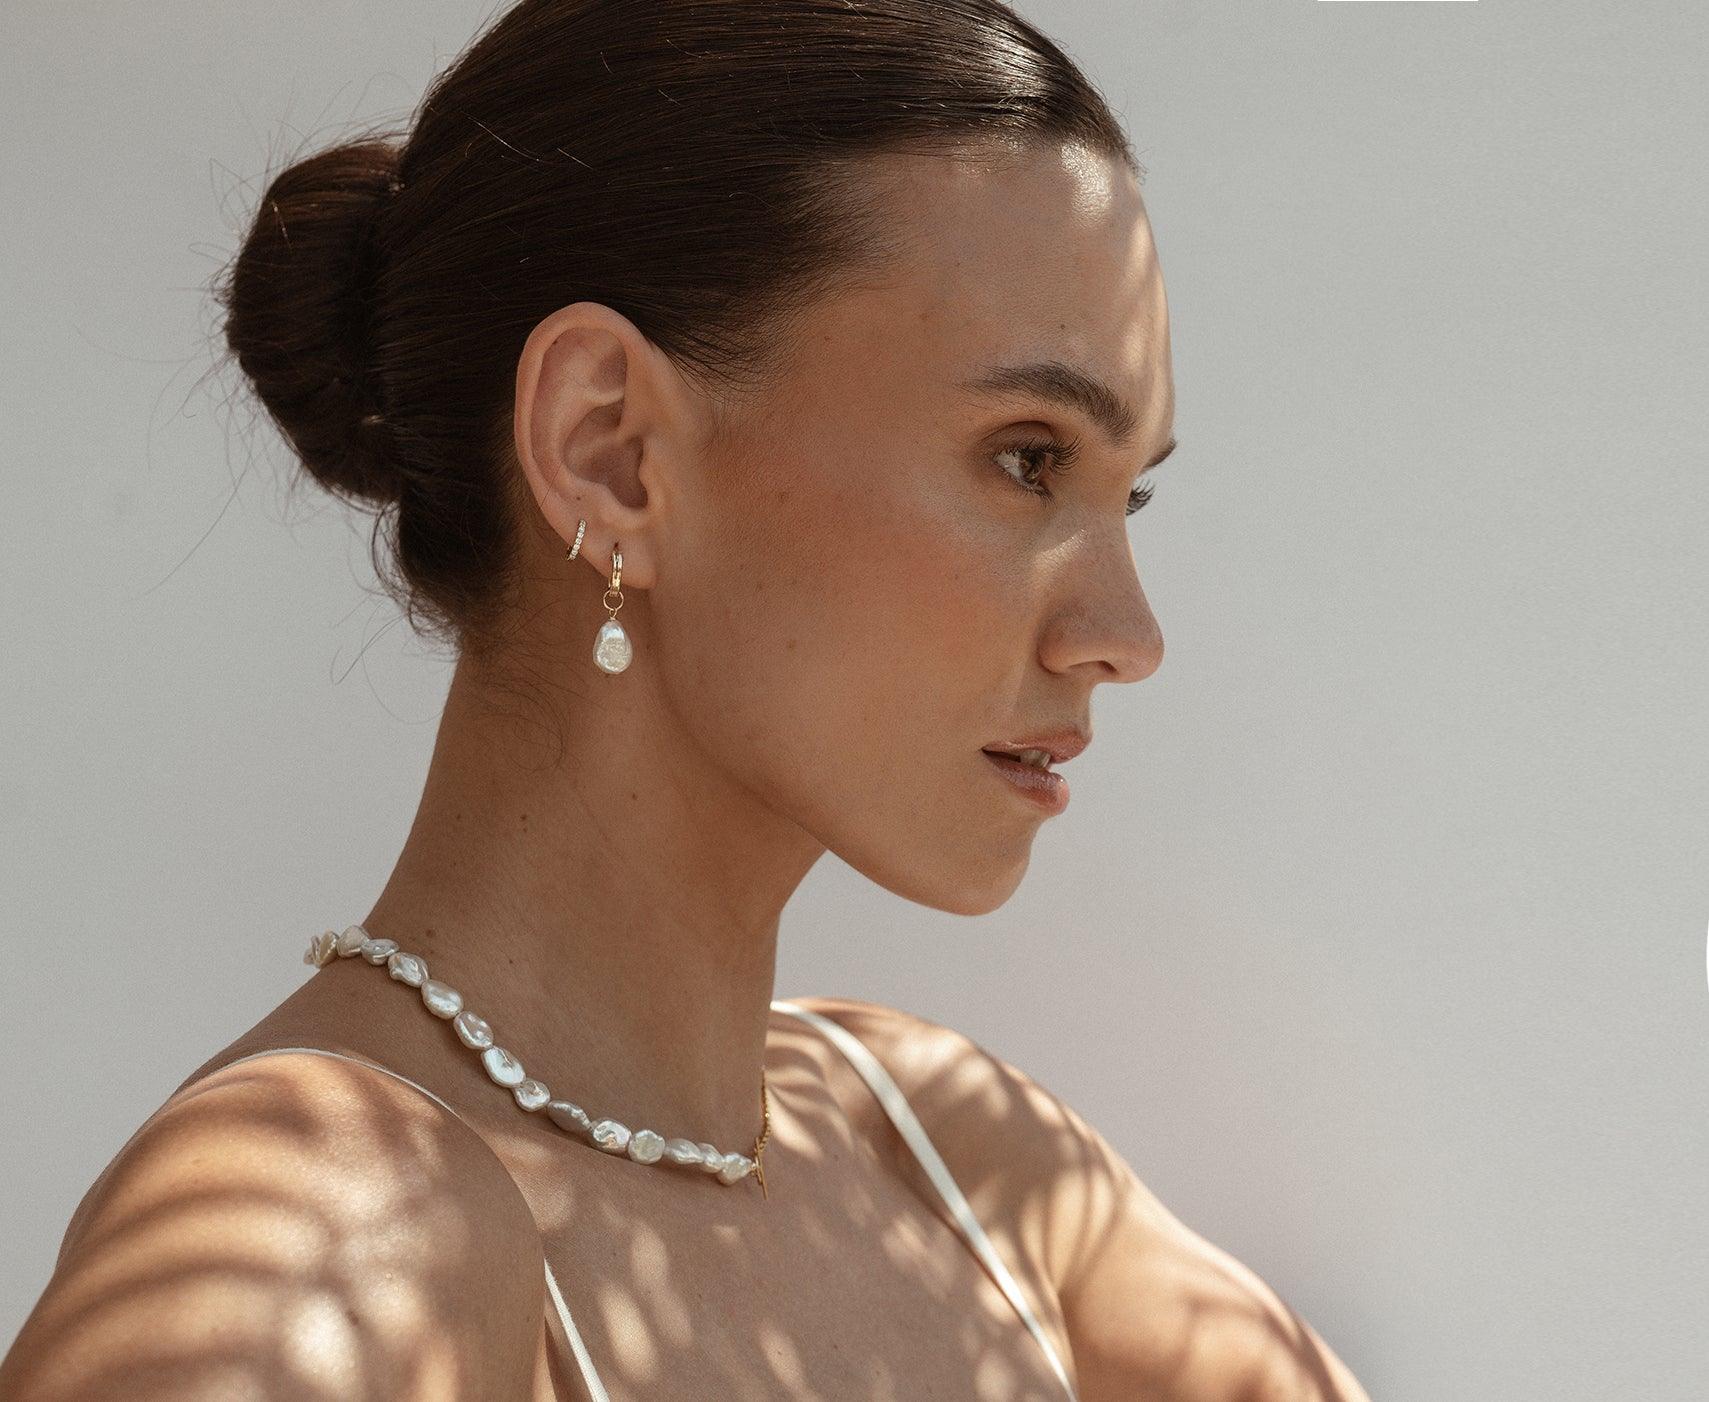 Layla Baroque Pearl 14k Gold Earrings - ELLA PALM